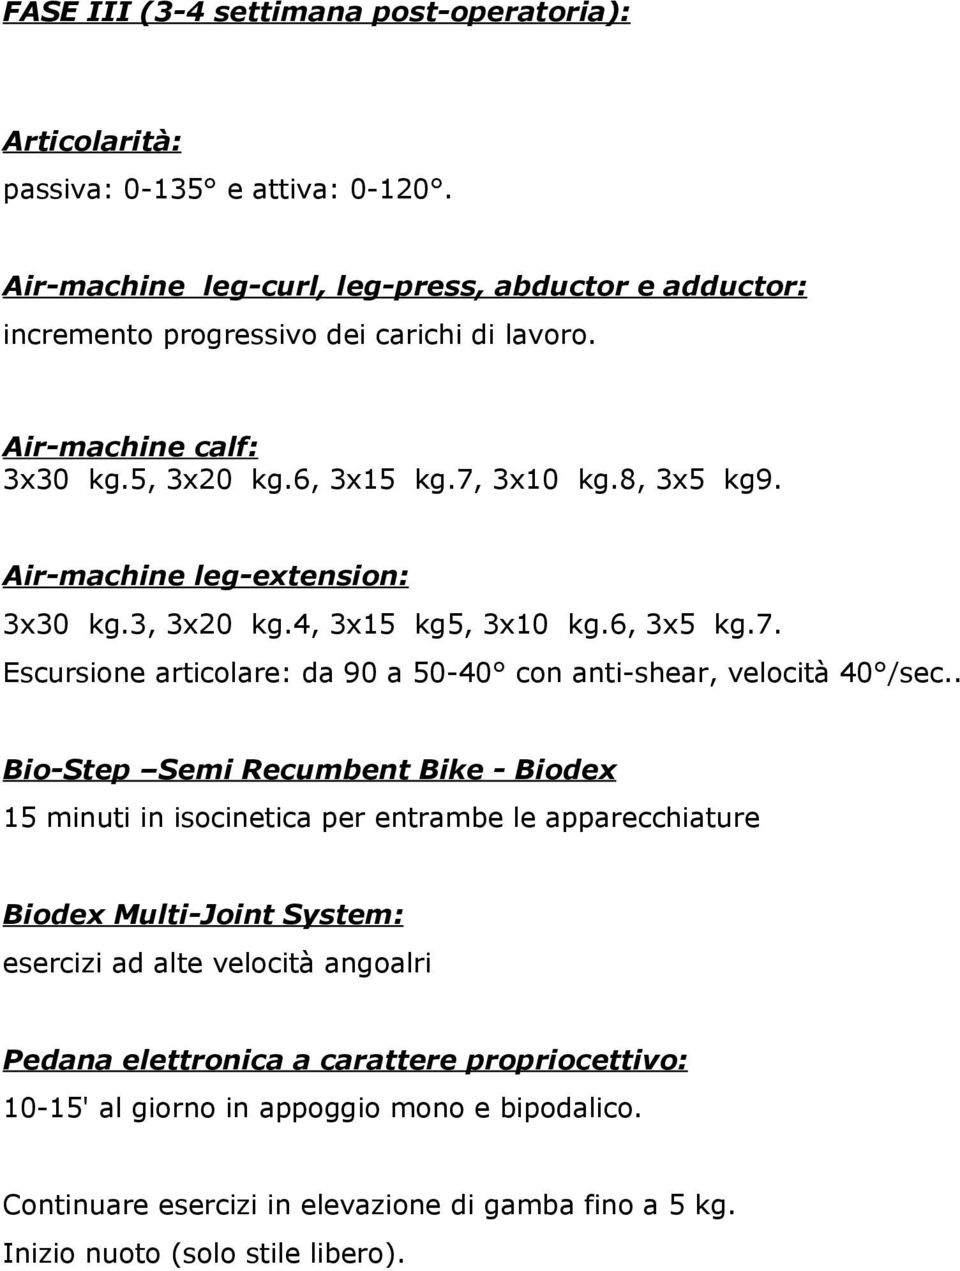 . Bio-Step Semi Recumbent Bike - Biodex 15 minuti in isocinetica per entrambe le apparecchiature Biodex Multi-Joint System: esercizi ad alte velocità angoalri Pedana elettronica a